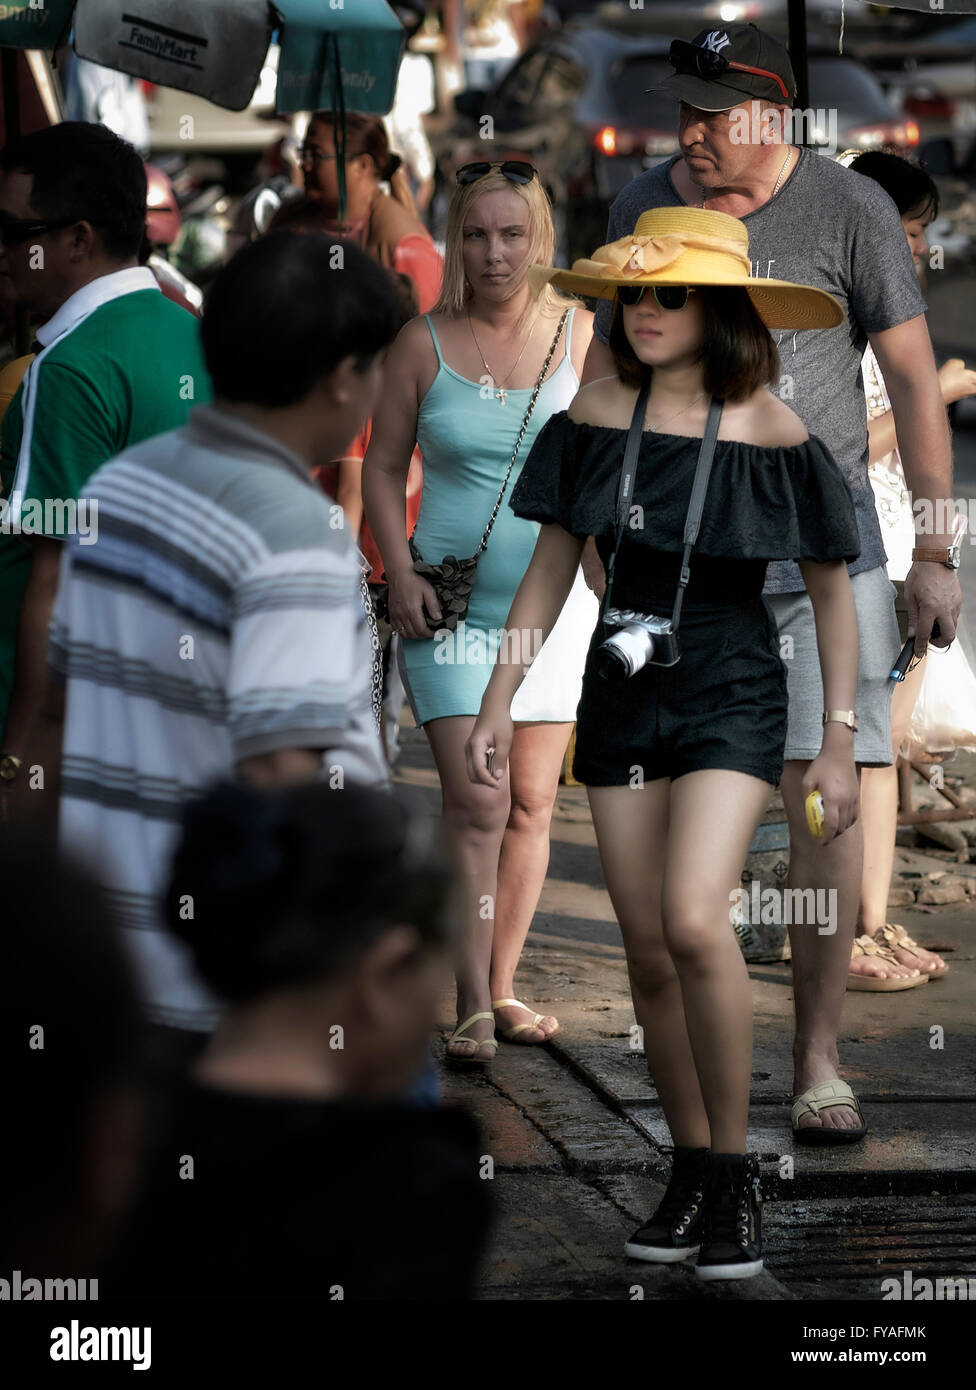 Habillé asiatique jeune fille se tenant debout dans une foule. Thaïlande S. E. Asie Banque D'Images